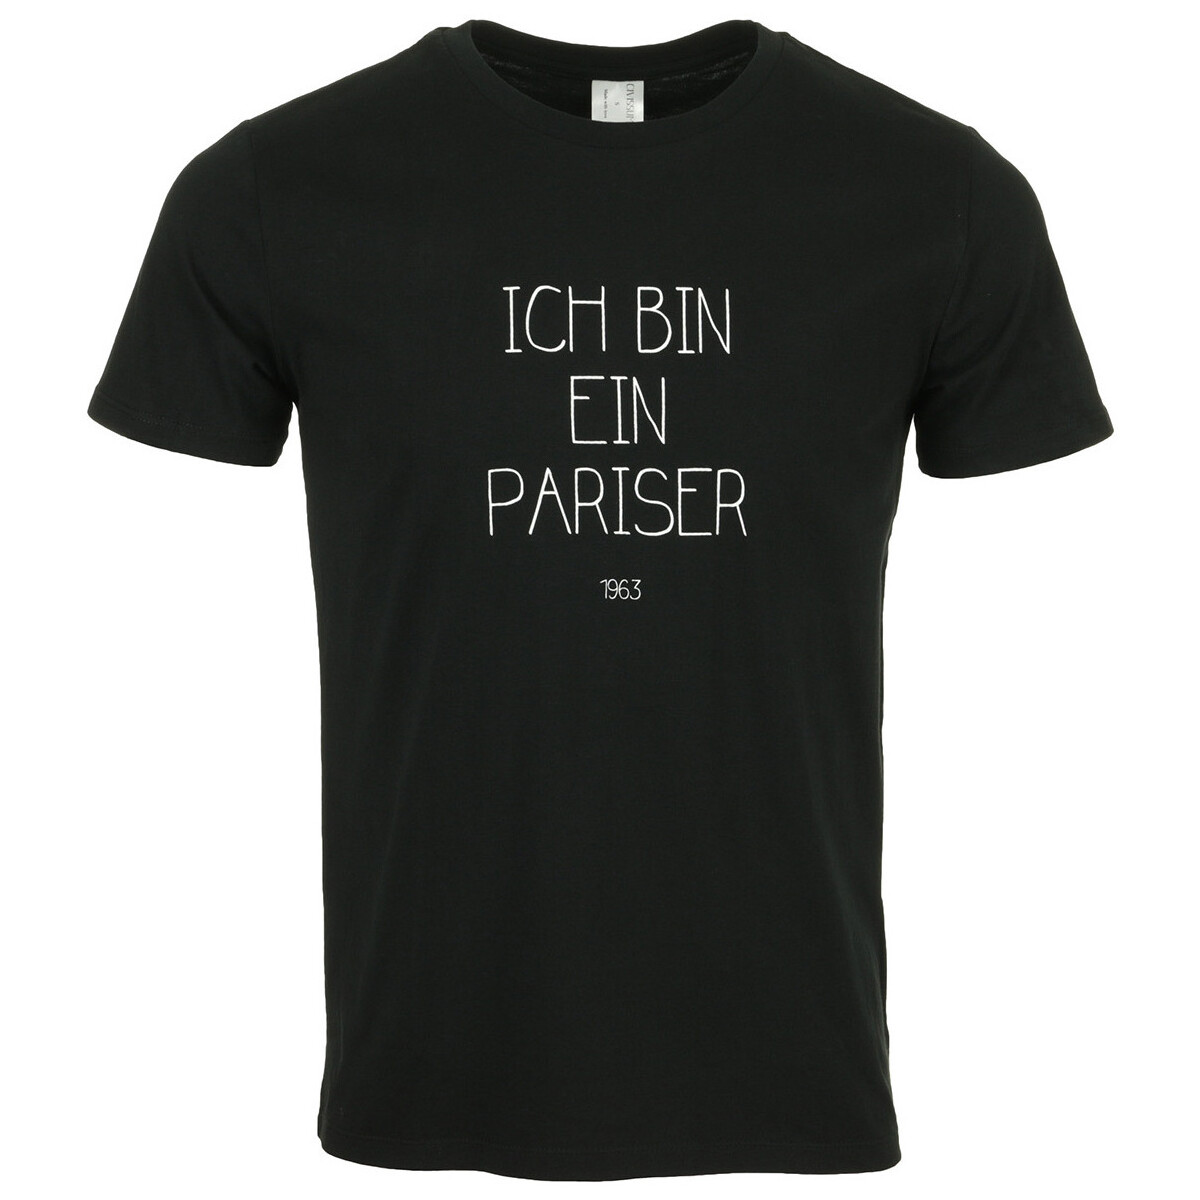 Textil Muži Trička s krátkým rukávem Civissum I Bin Ein Pariser Černá